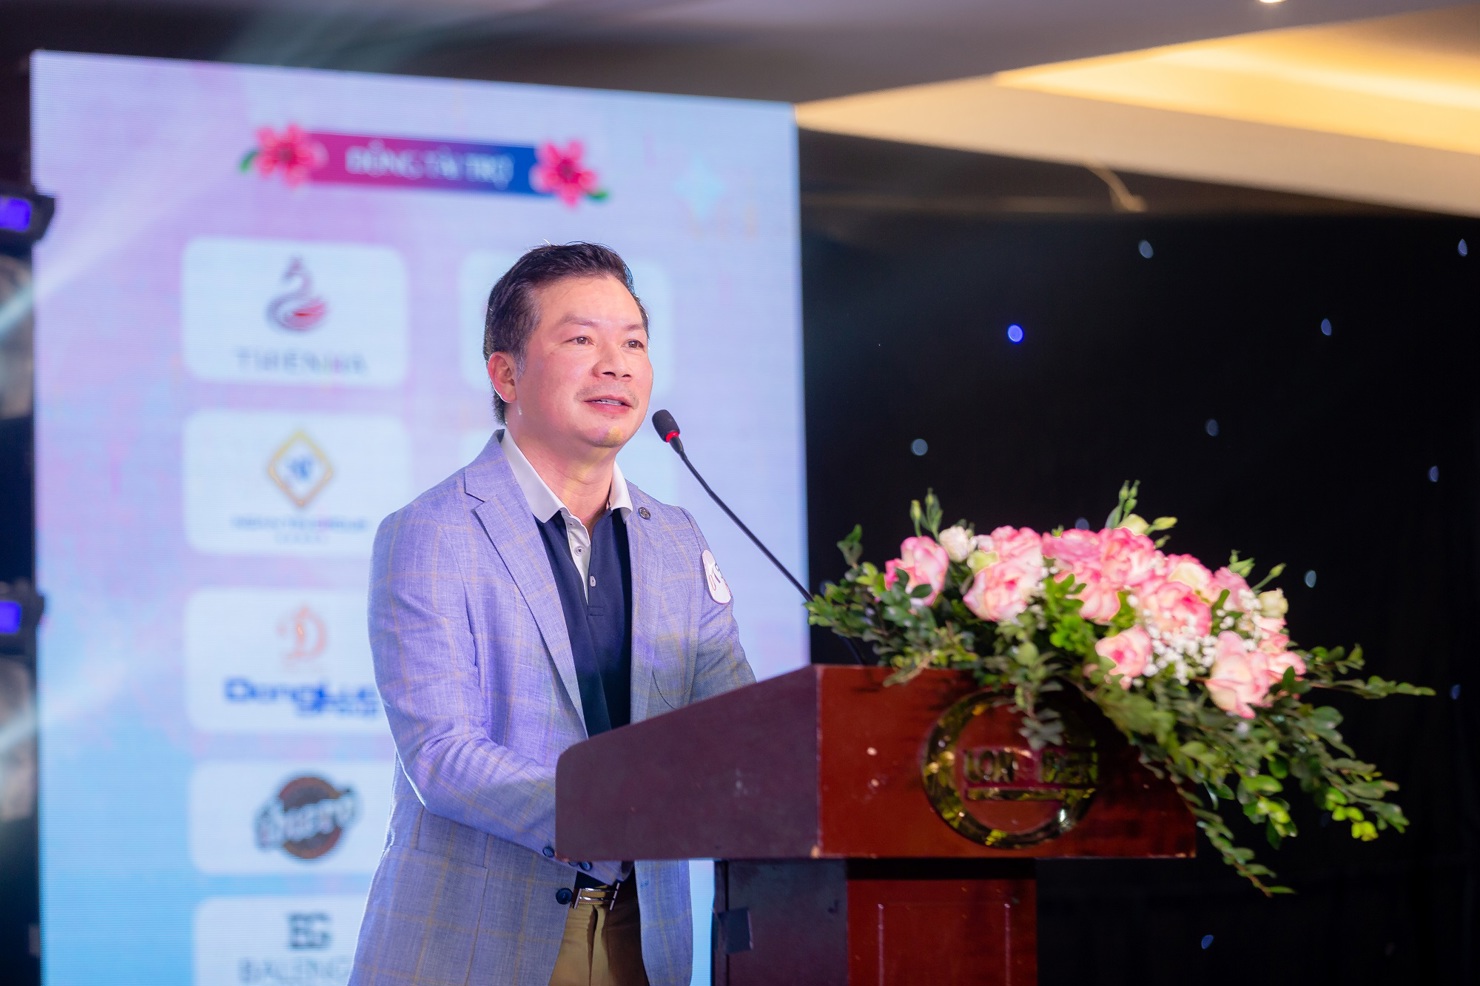 &Ocirc;ng Phạm Thanh Hưng &ndash; Ph&oacute; Chủ tịch Tập đo&agrave;n Cen Group chia sẻ tại sự kiện.